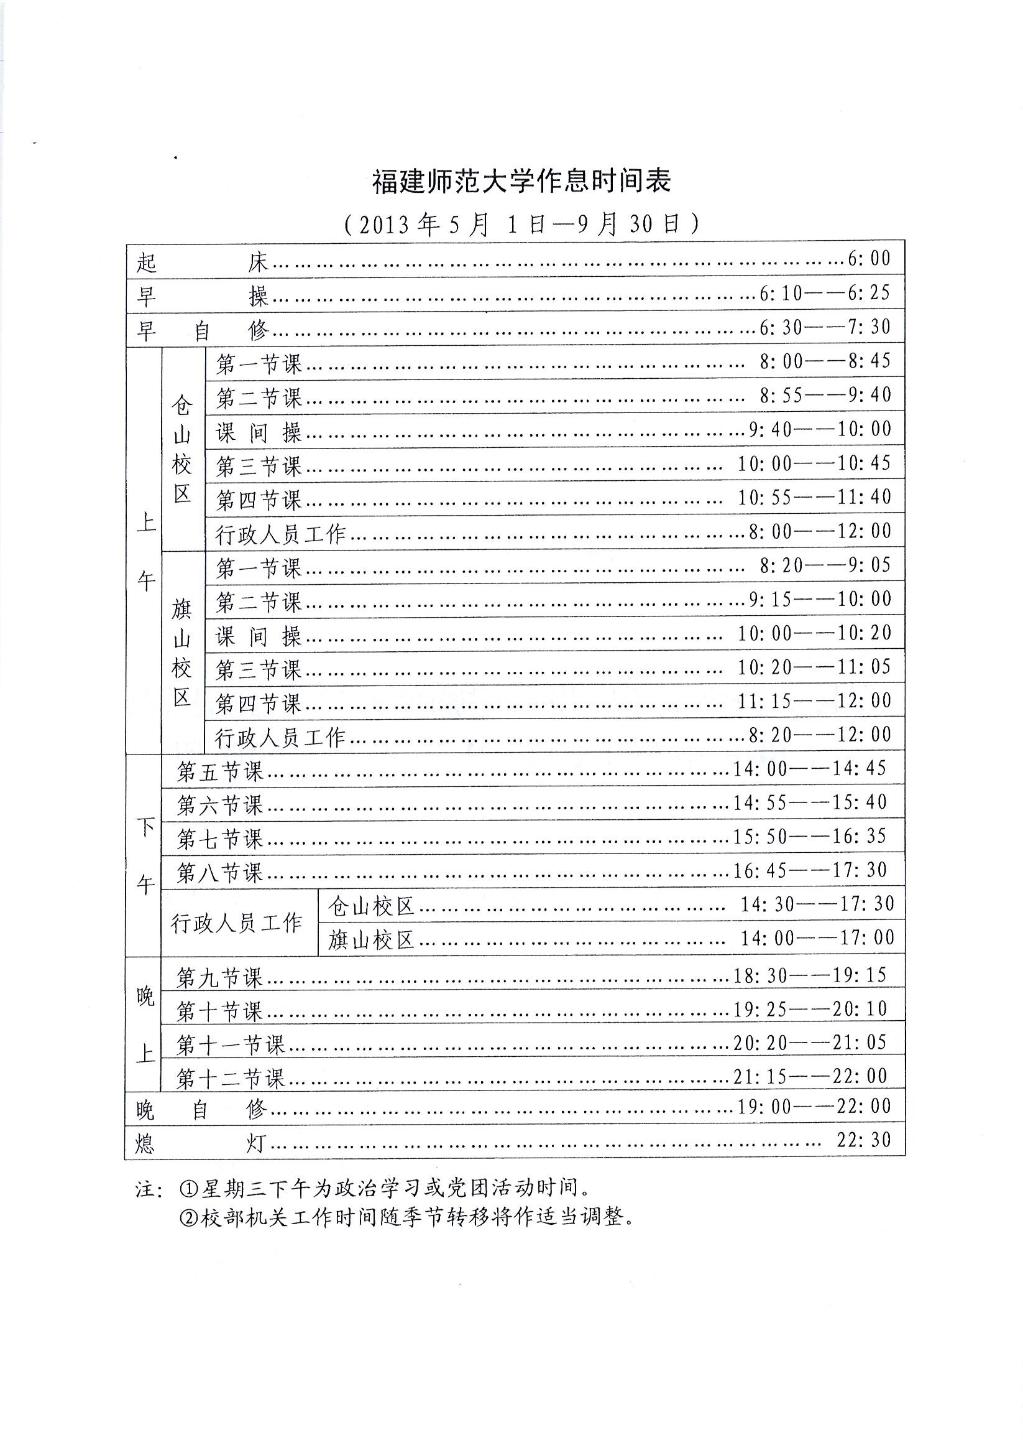 福建师范大学作息时间表（2013年5月1日-9月30日）